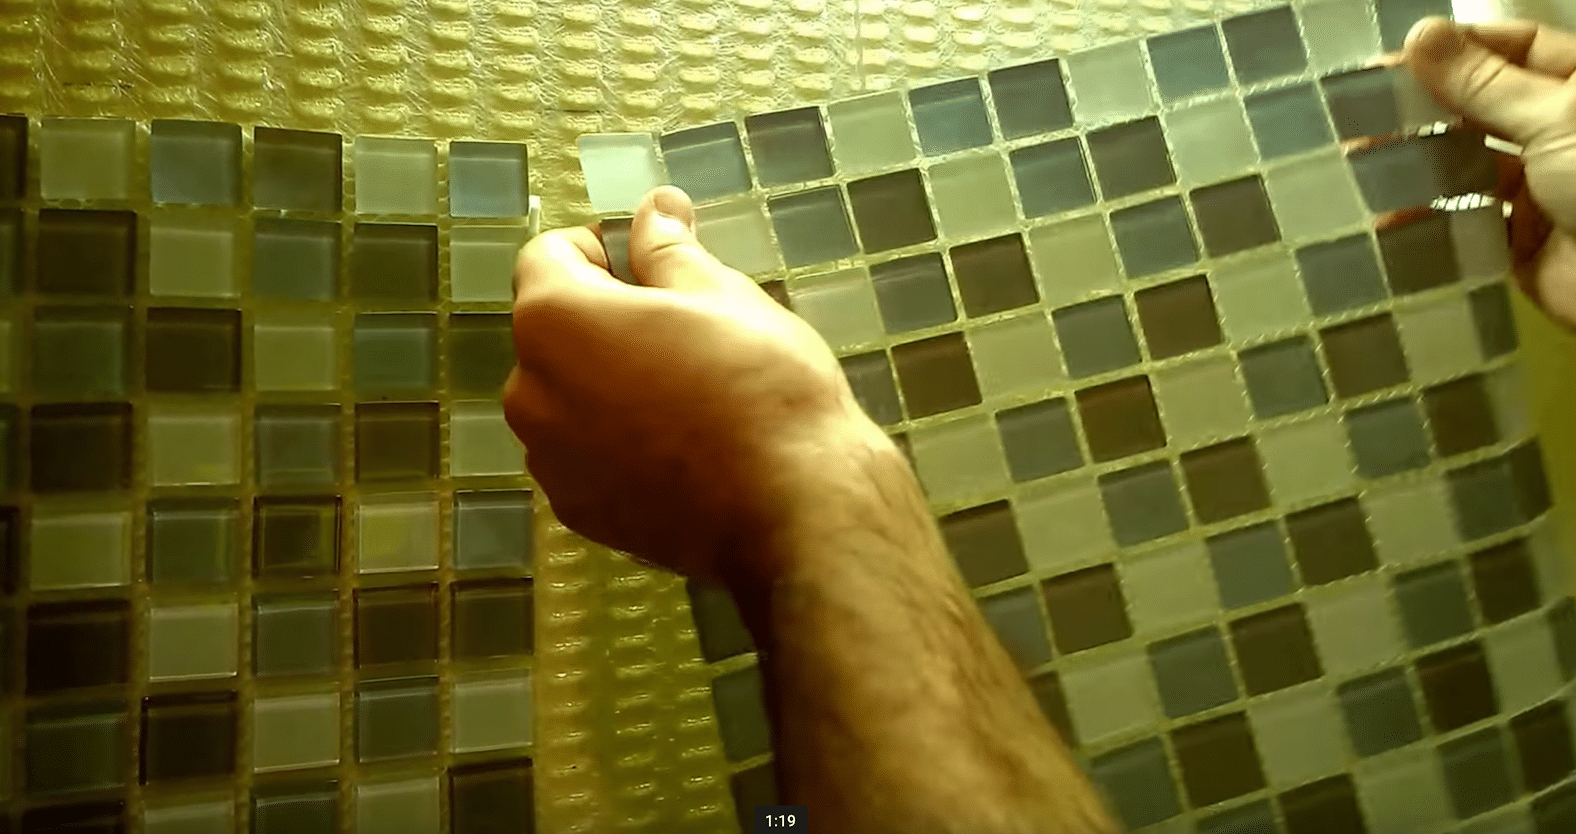 backsplash-kitchen-tile